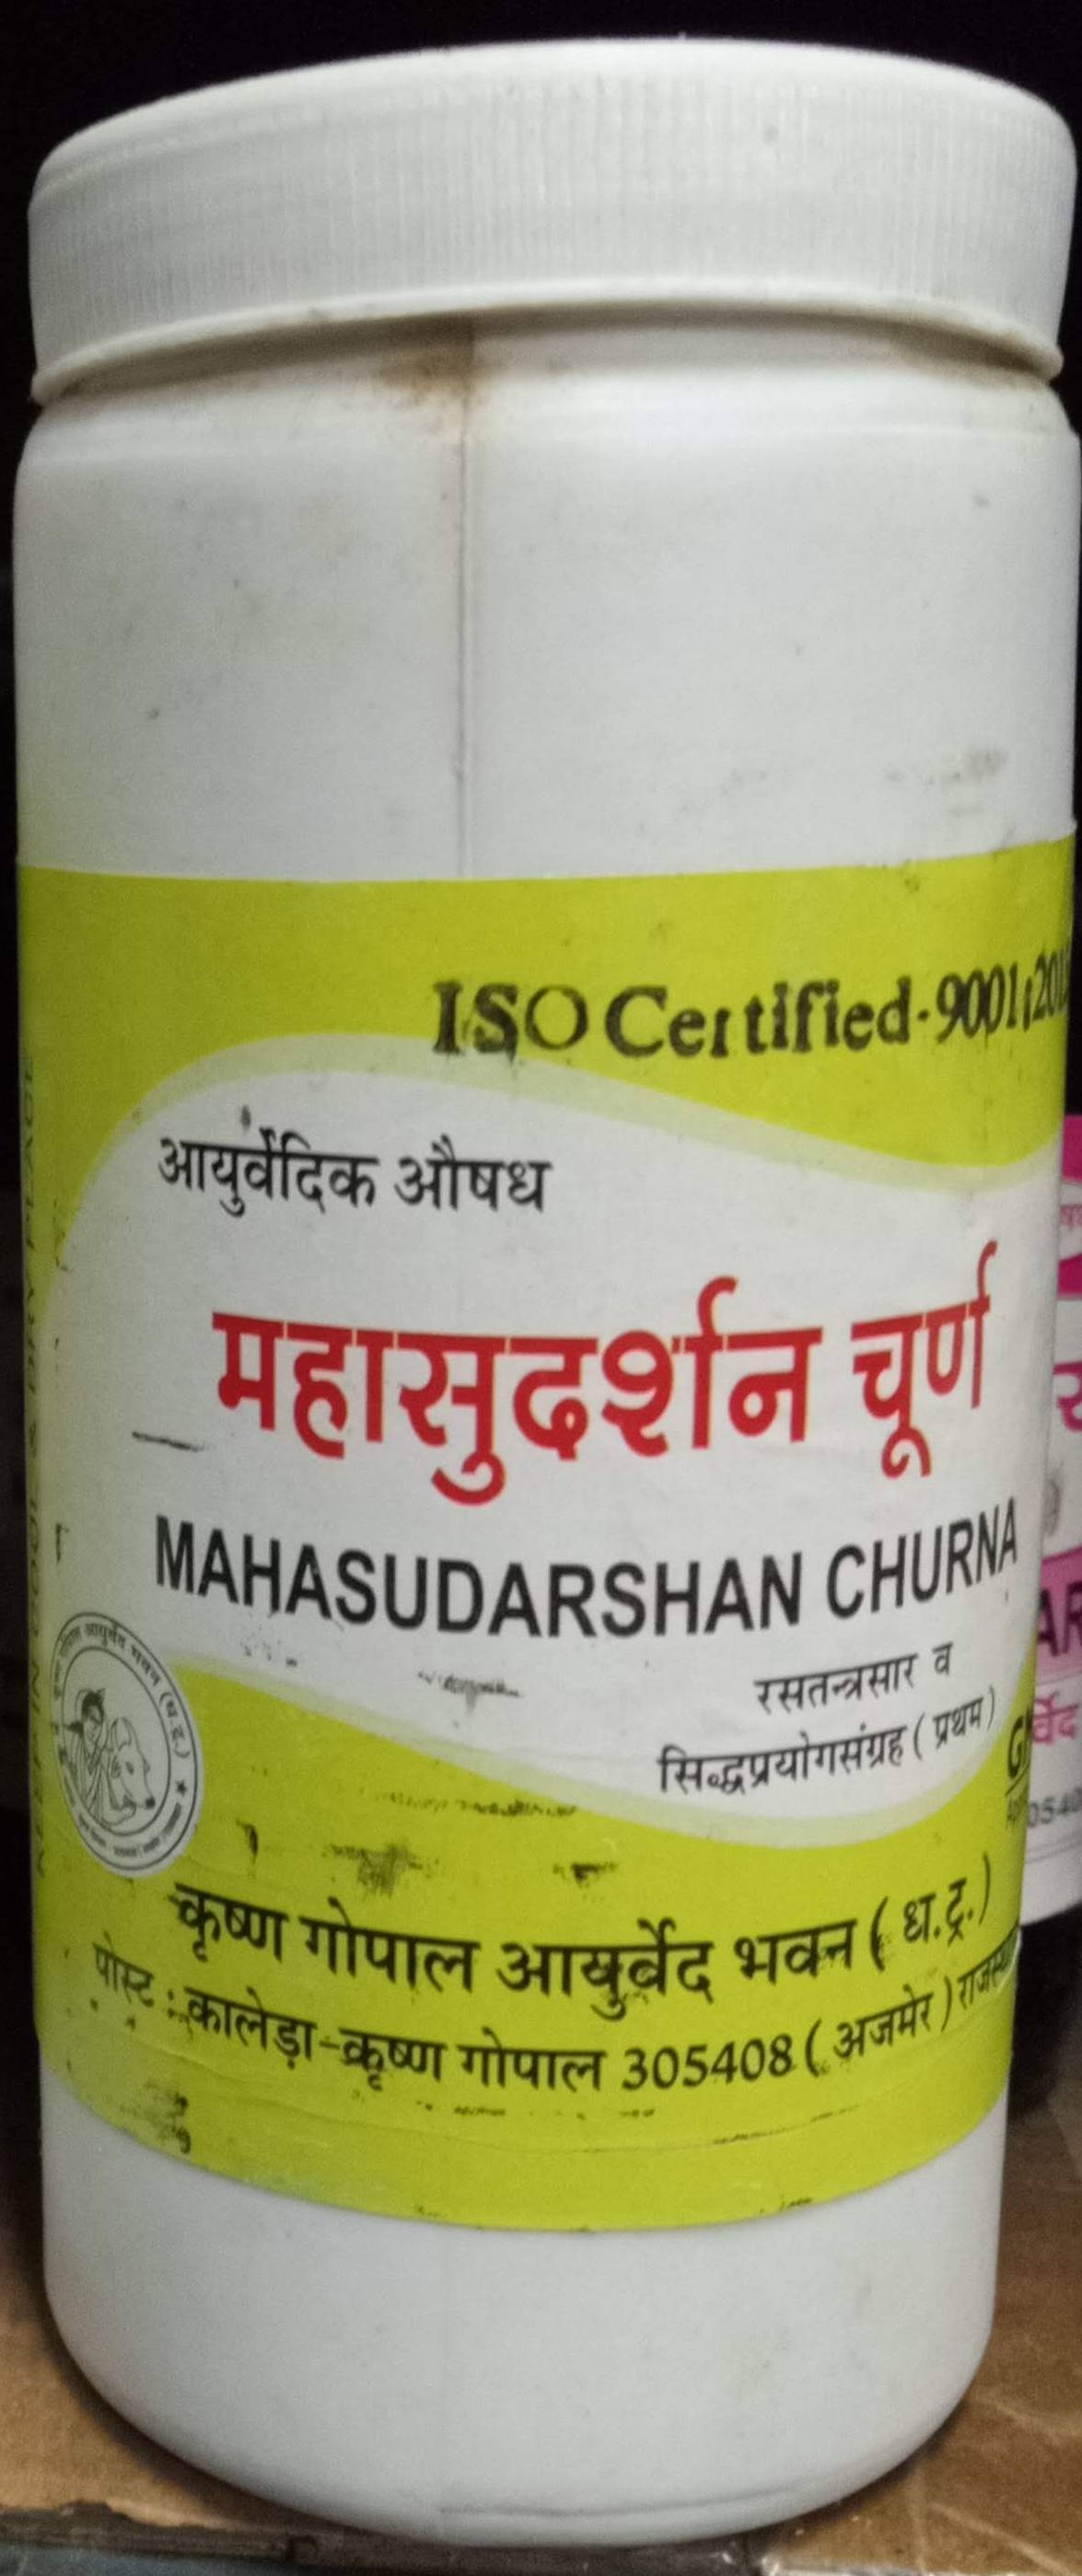 mahasudarshan churna 100gm upto 20% off krishna gopal ayurved bhavan